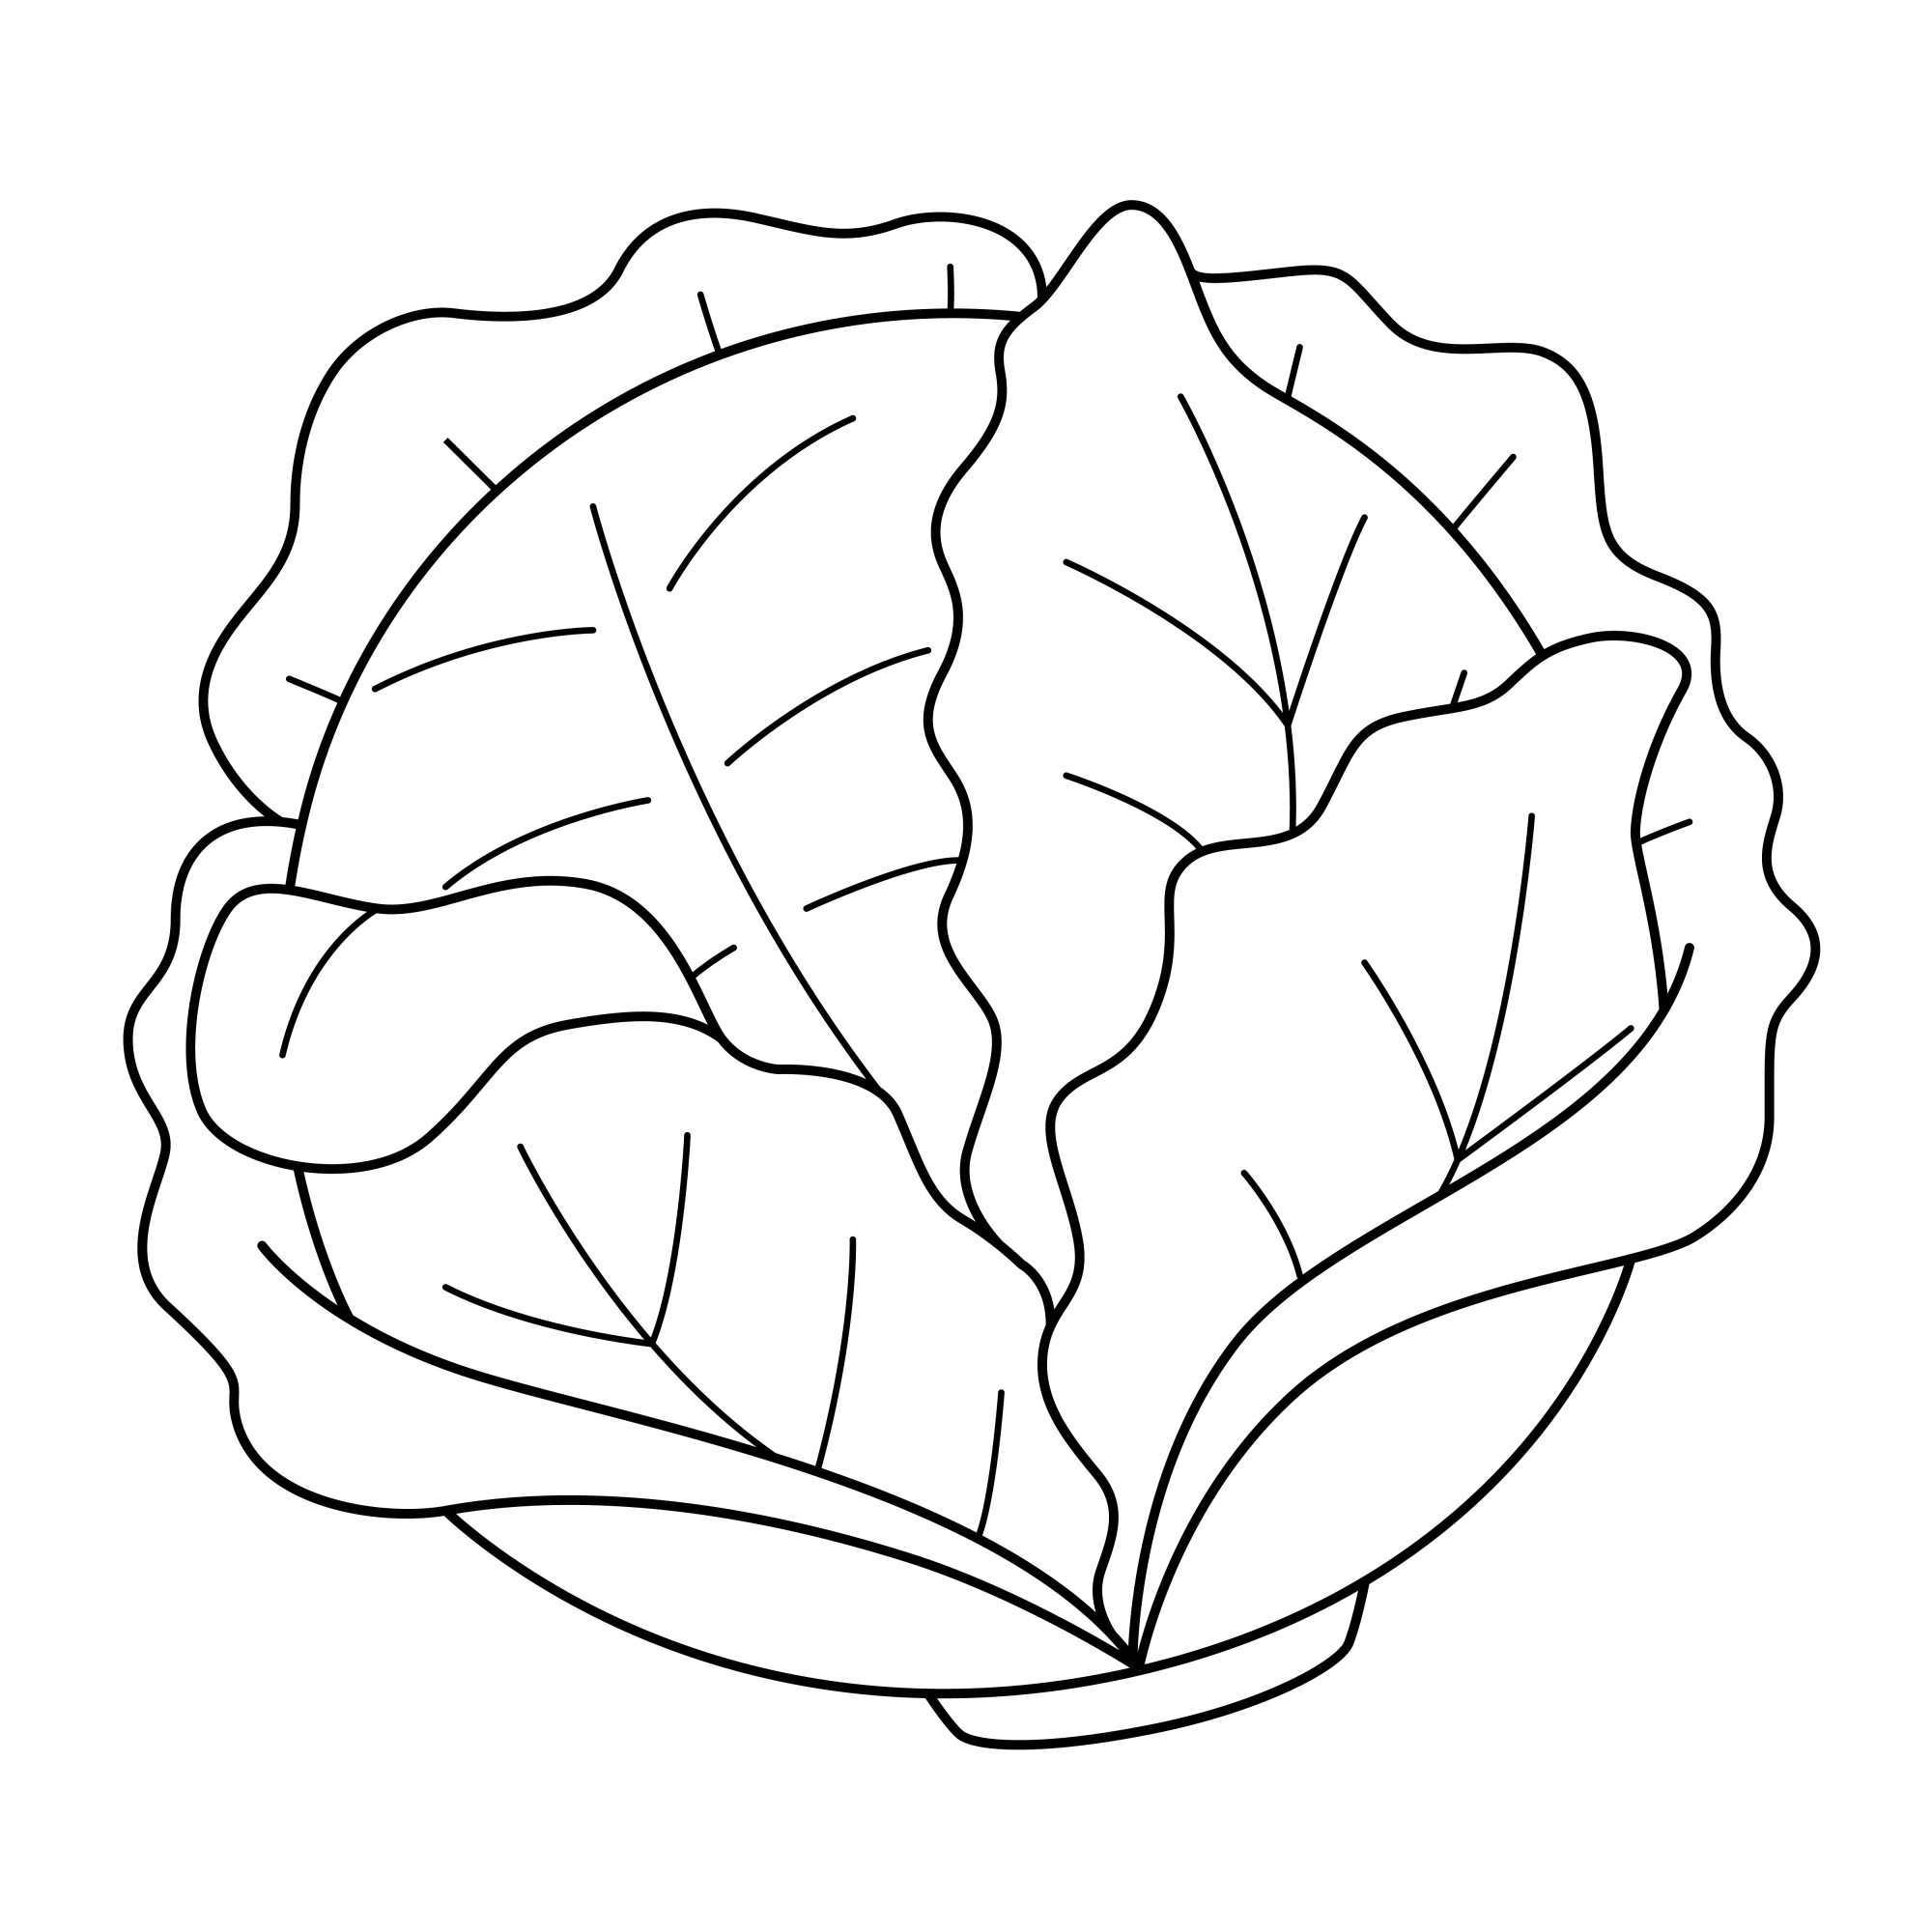 Раскраска для детей: капуста с красивыми листьями